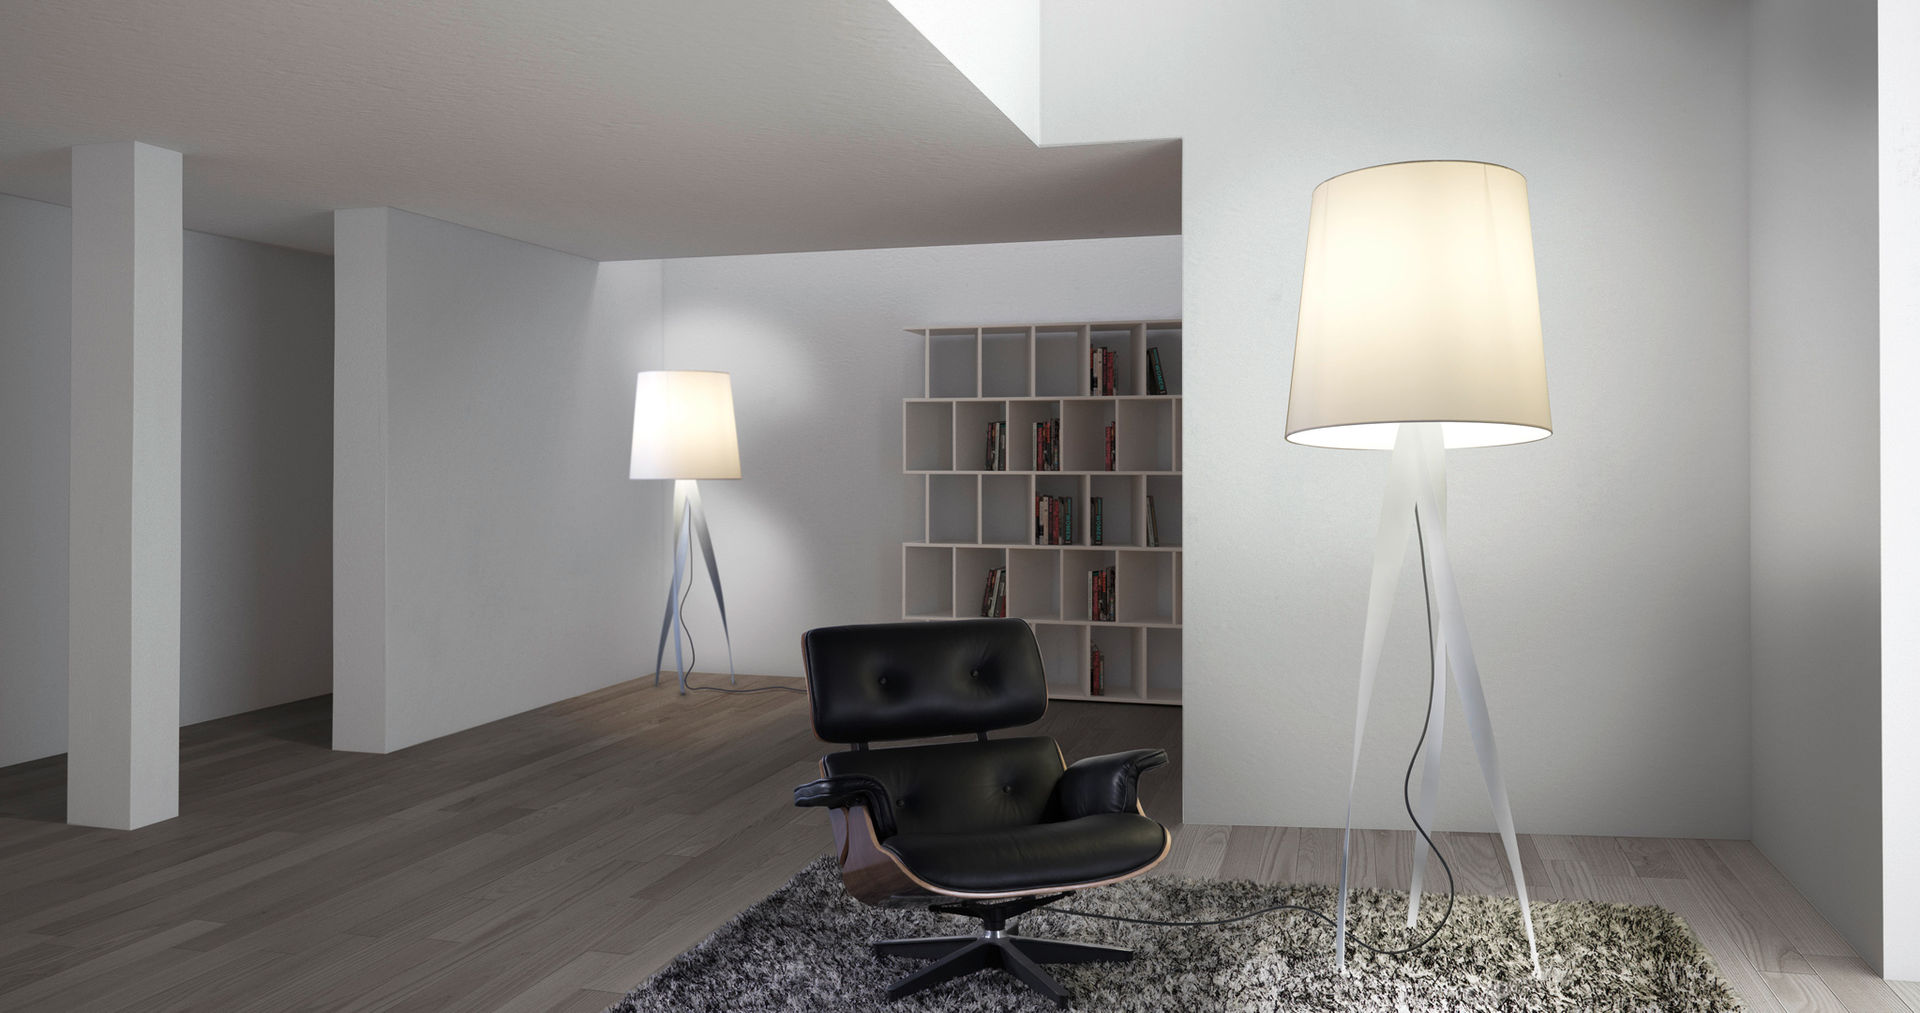 Lámparas de pie, el complemento perfecto., Griscan diseño iluminación Griscan diseño iluminación Modern living room Lighting